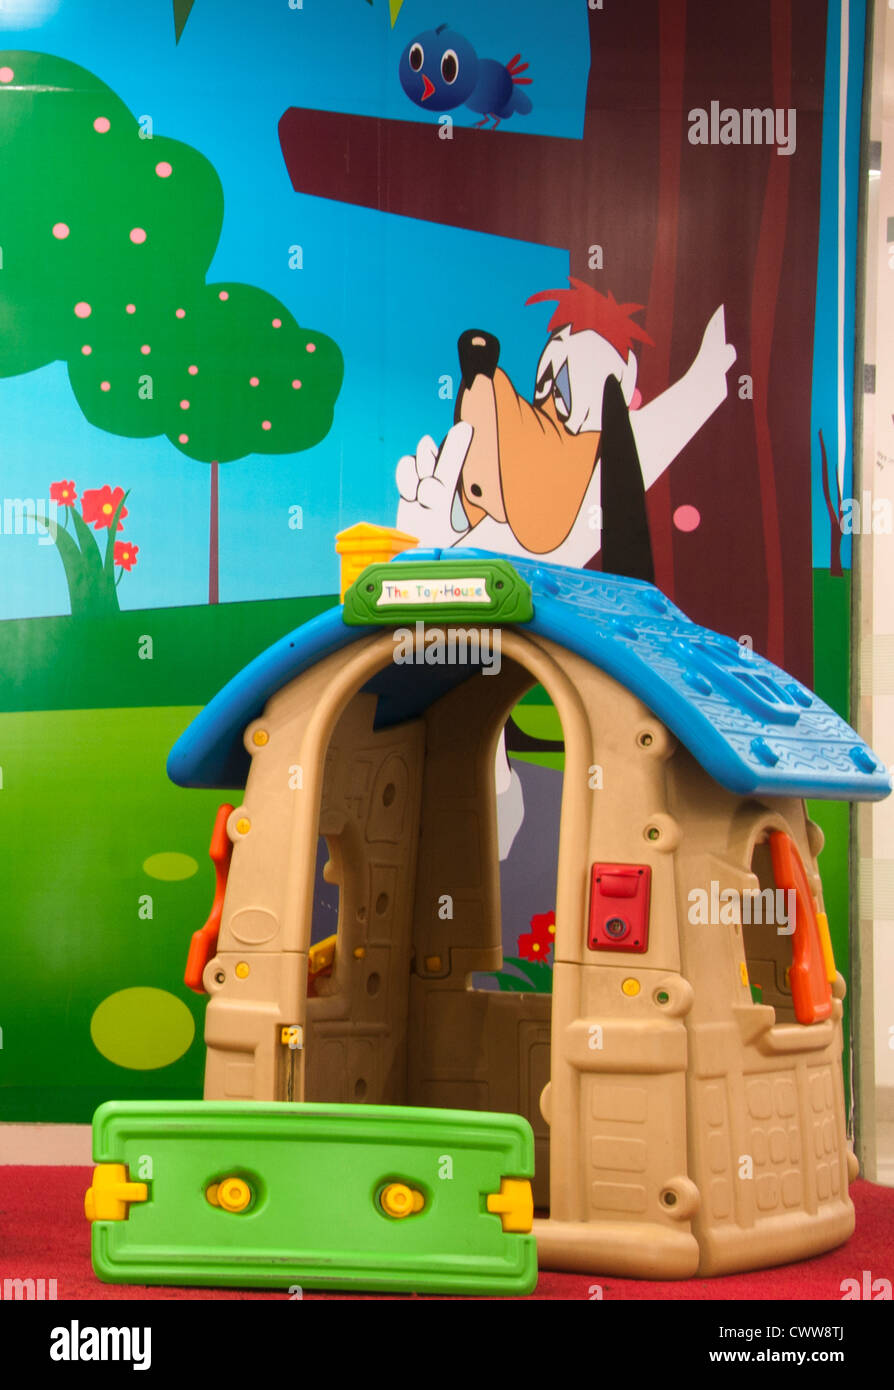 Toy house and slide in kindergarten, preschool Stock Photo